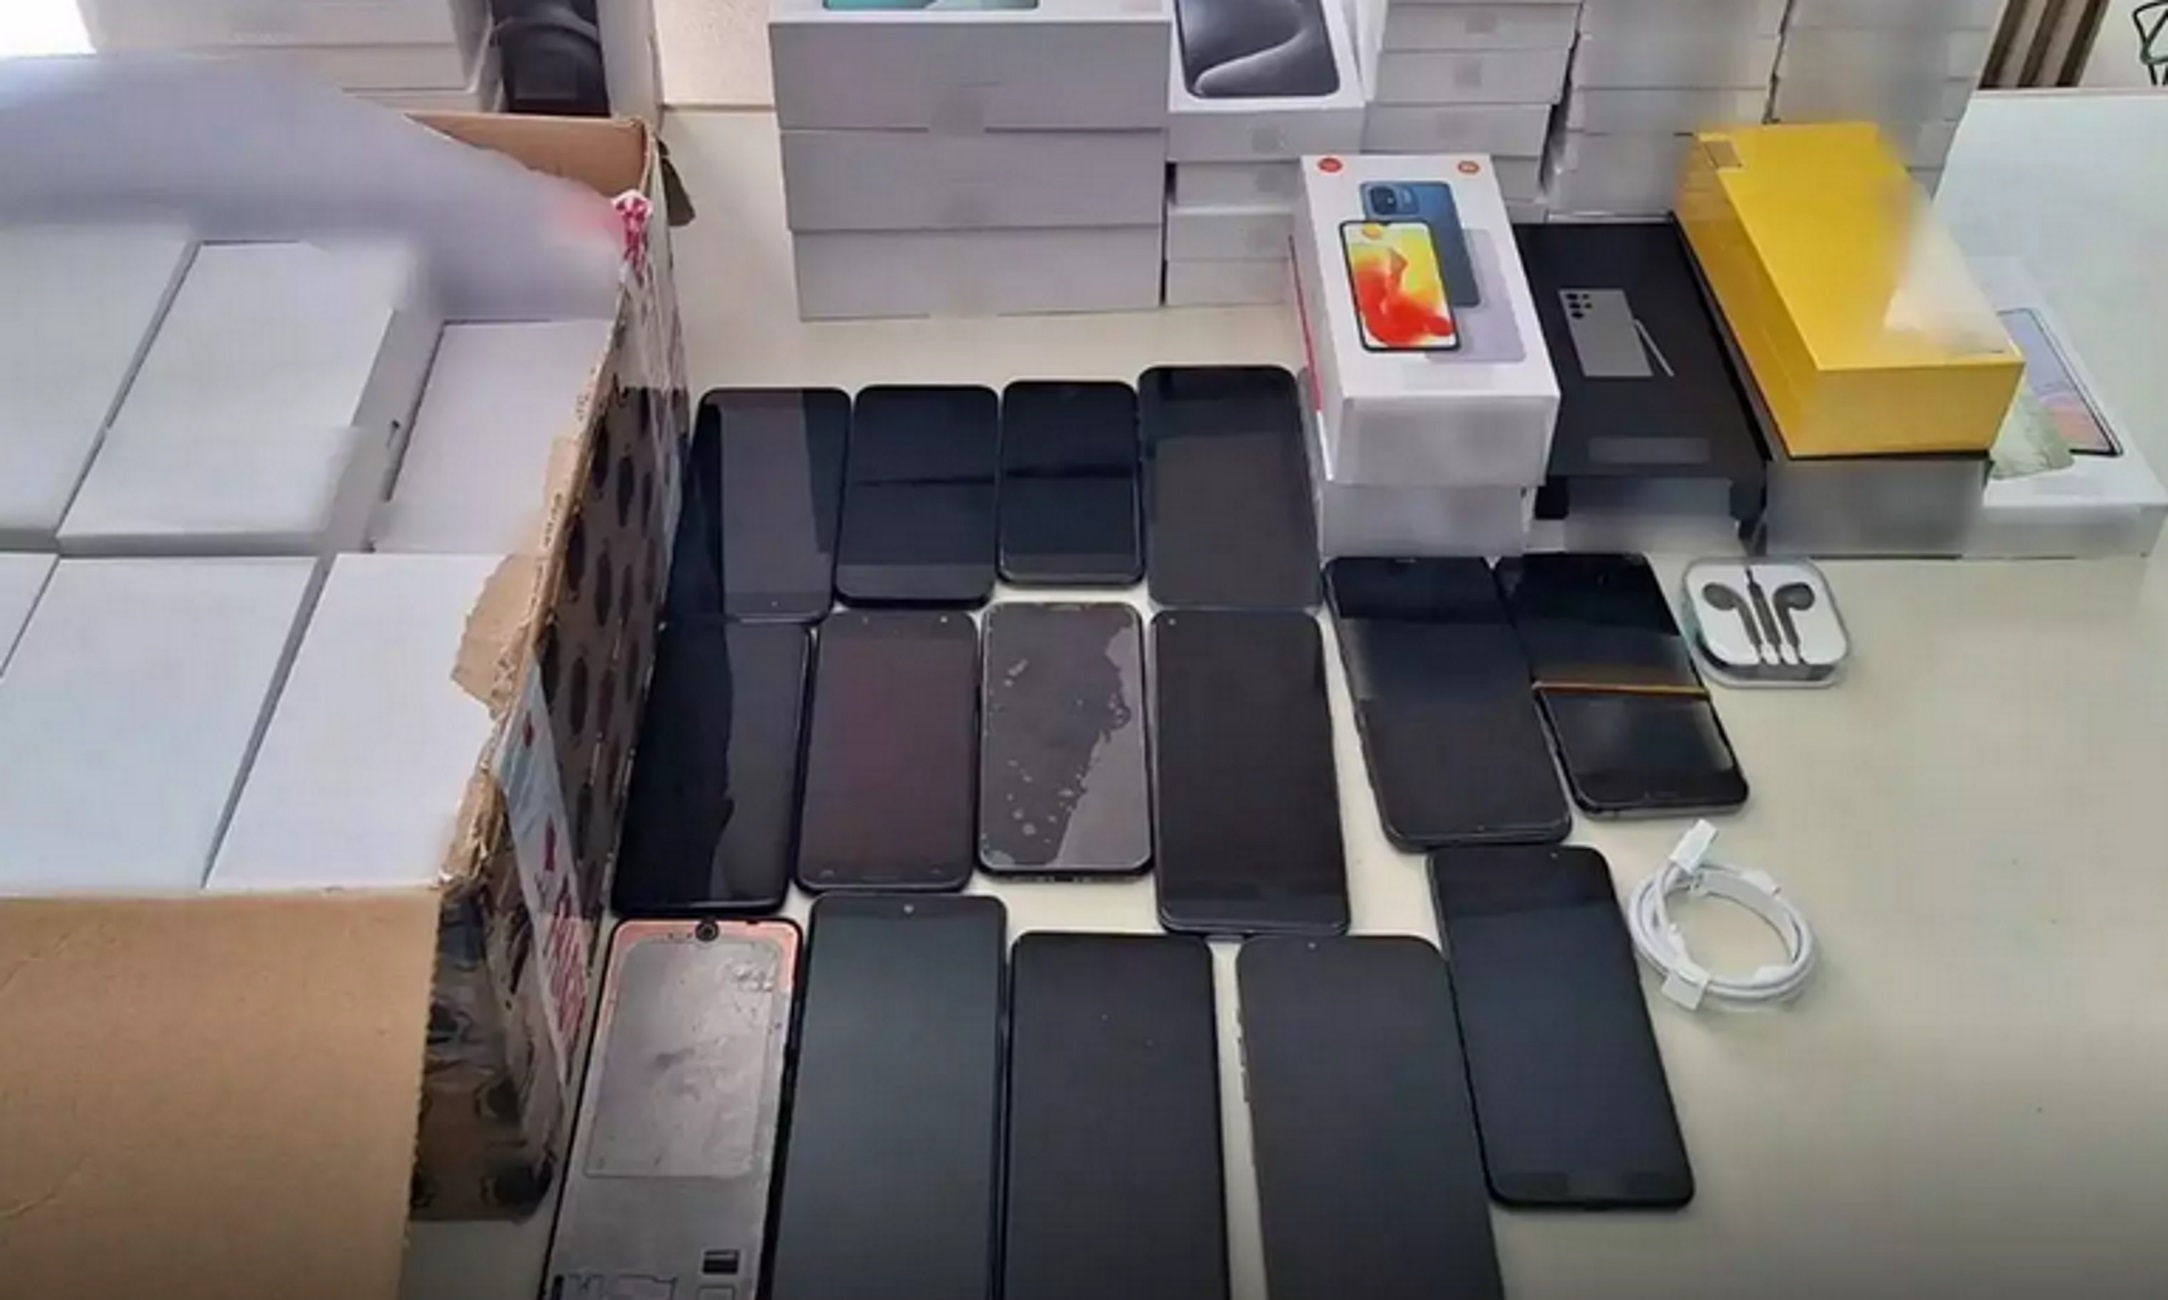 Θεσσαλονίκη: Έκλεψαν από κατάστημα 93 κινητά τηλέφωνα αξίας 80.000 ευρώ – 4 συλλήψεις στην Πιερία